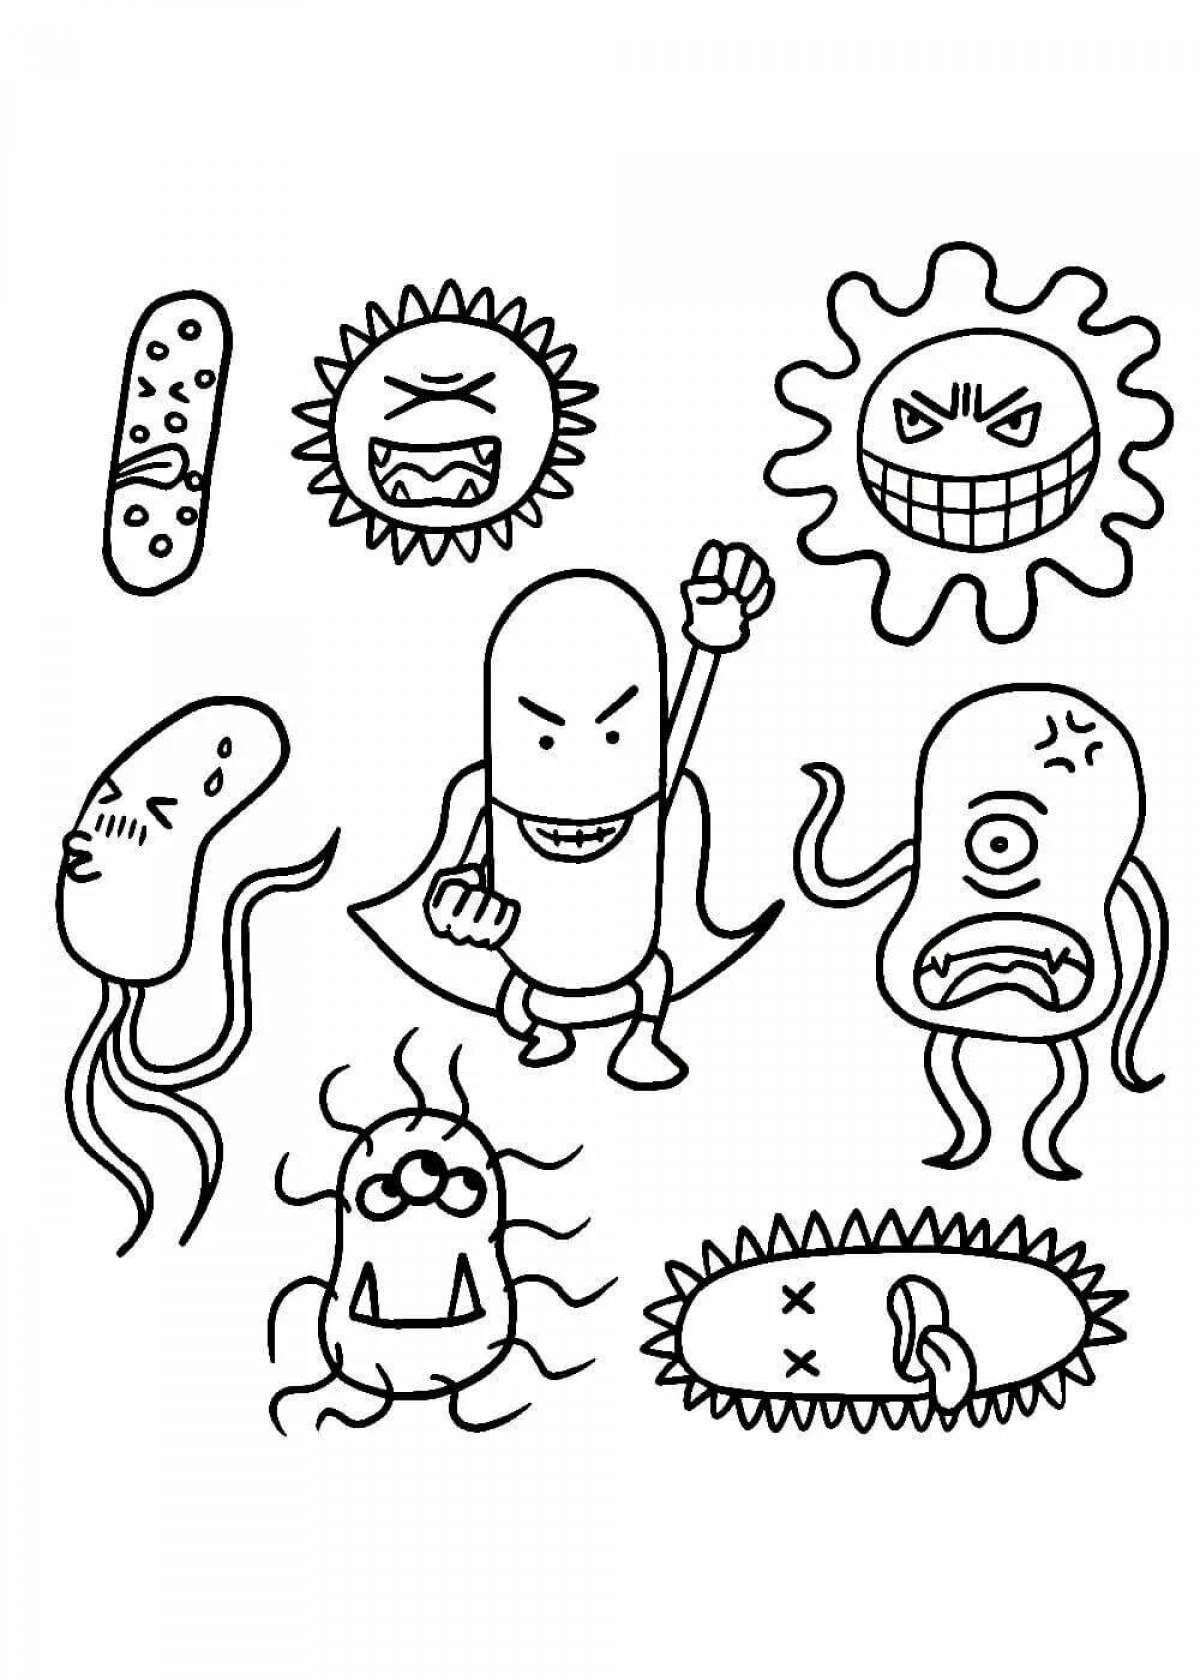 Просветительская раскраска микробов и бактерий